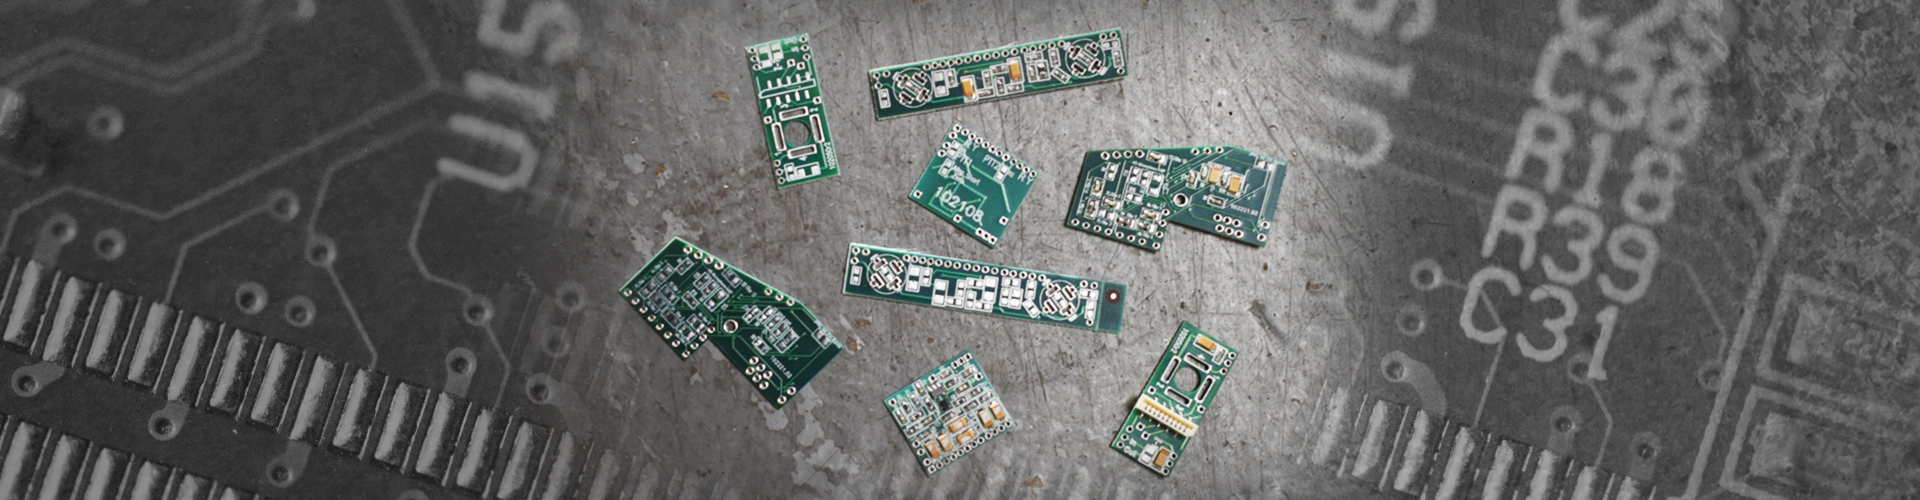 Printed Circuit Board Assemblies (PCBA)